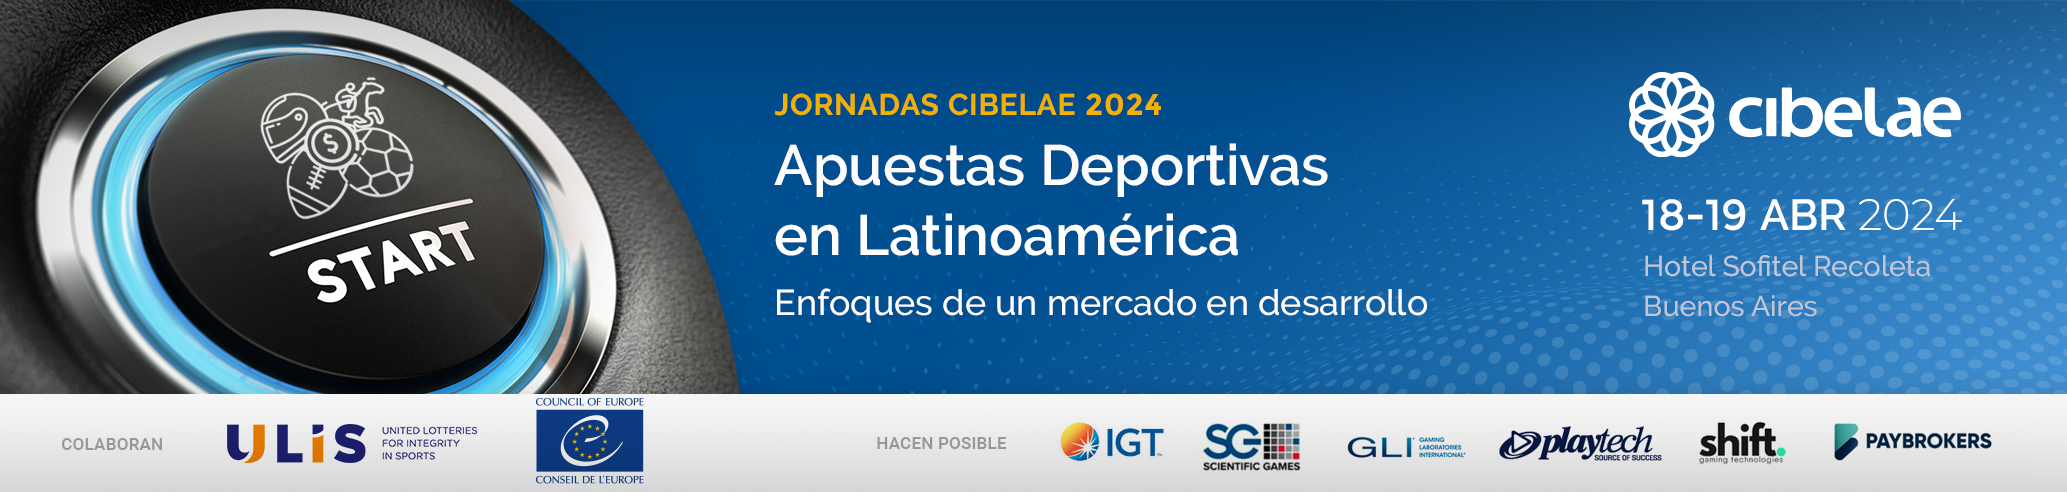 Jornadas Cibelae 2024: Apuestas deportivas en Latinoamérica